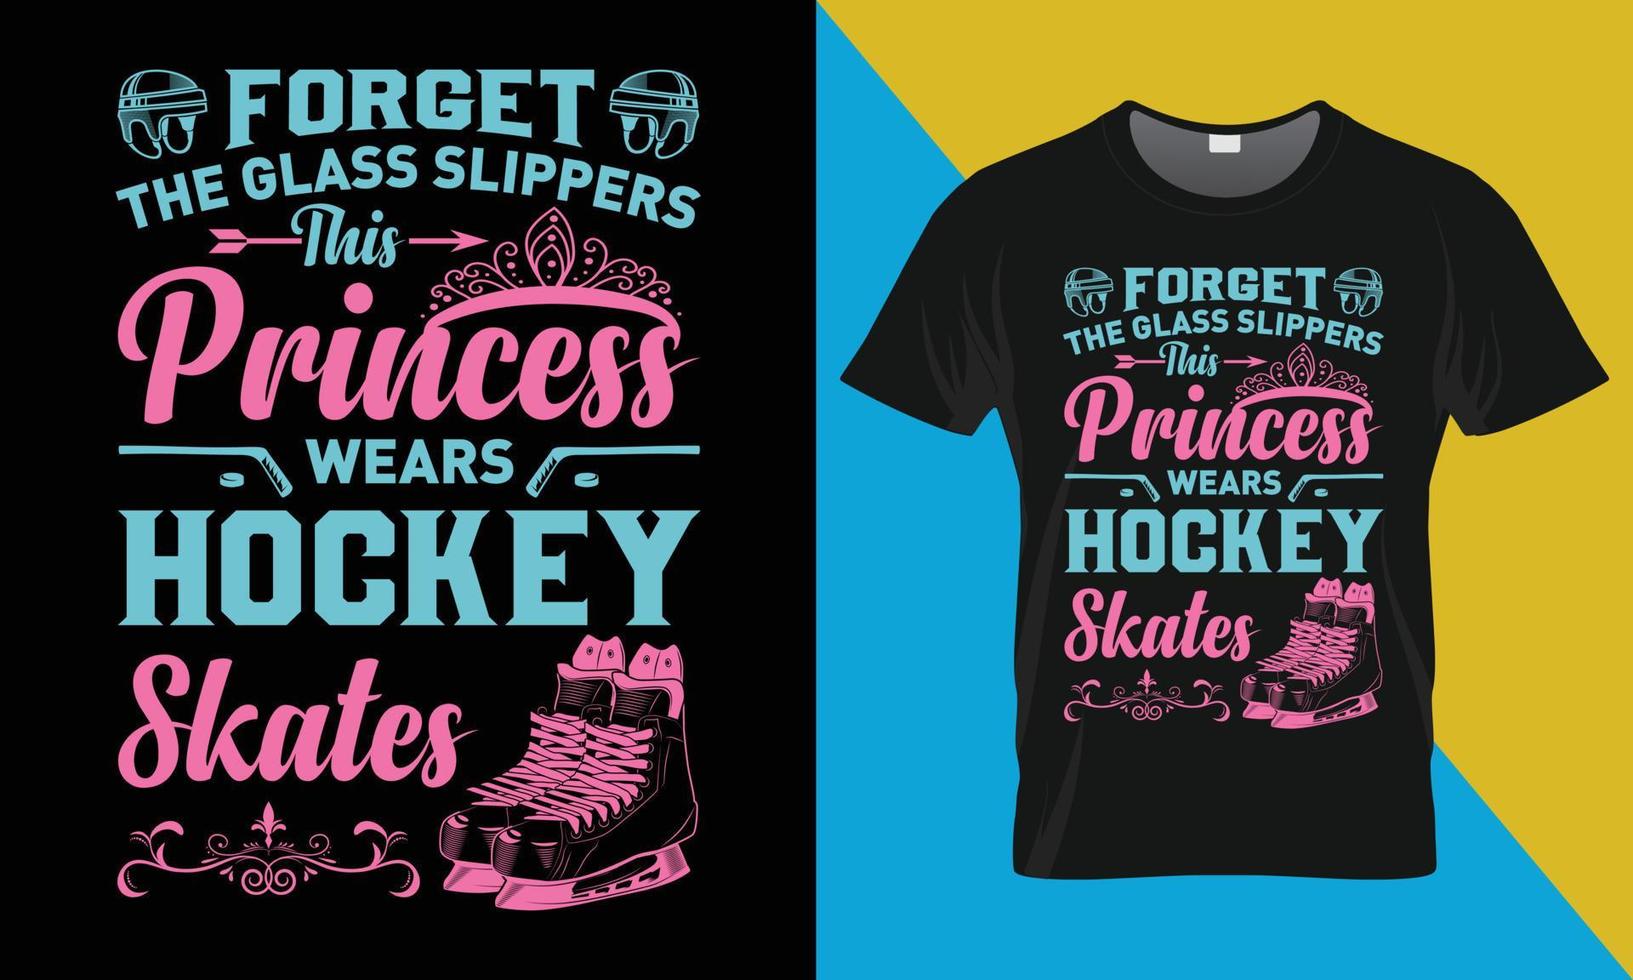 hockey t-shirt ontwerp, vergeten de glas slippers vector